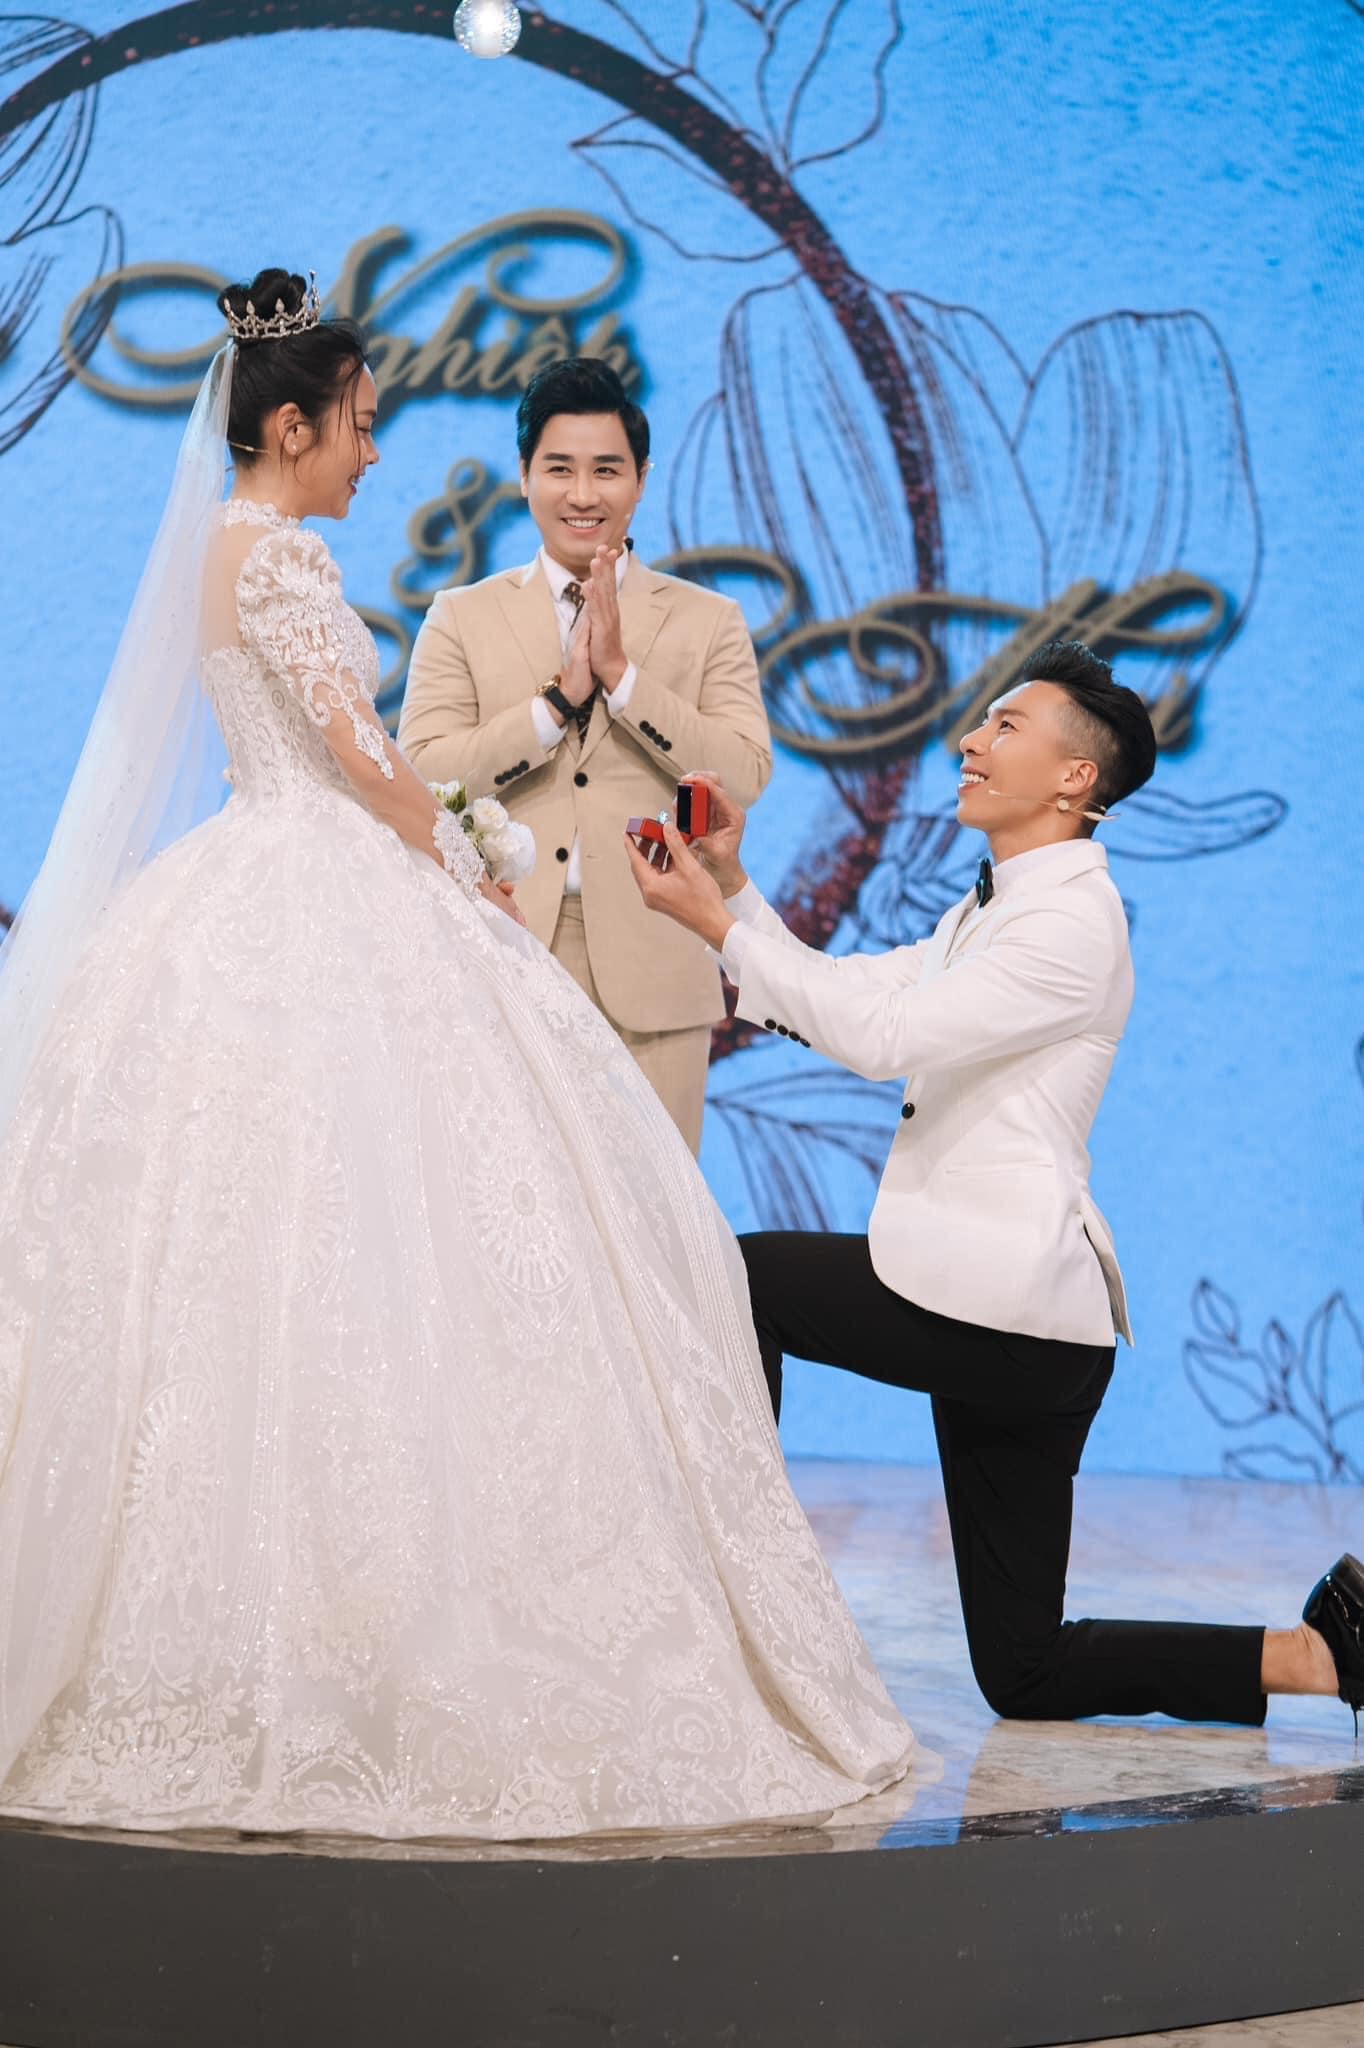 O Sen Ngọc Mai mặc váy cưới, được chồng cầu hôn trên sân khấu - ảnh 4